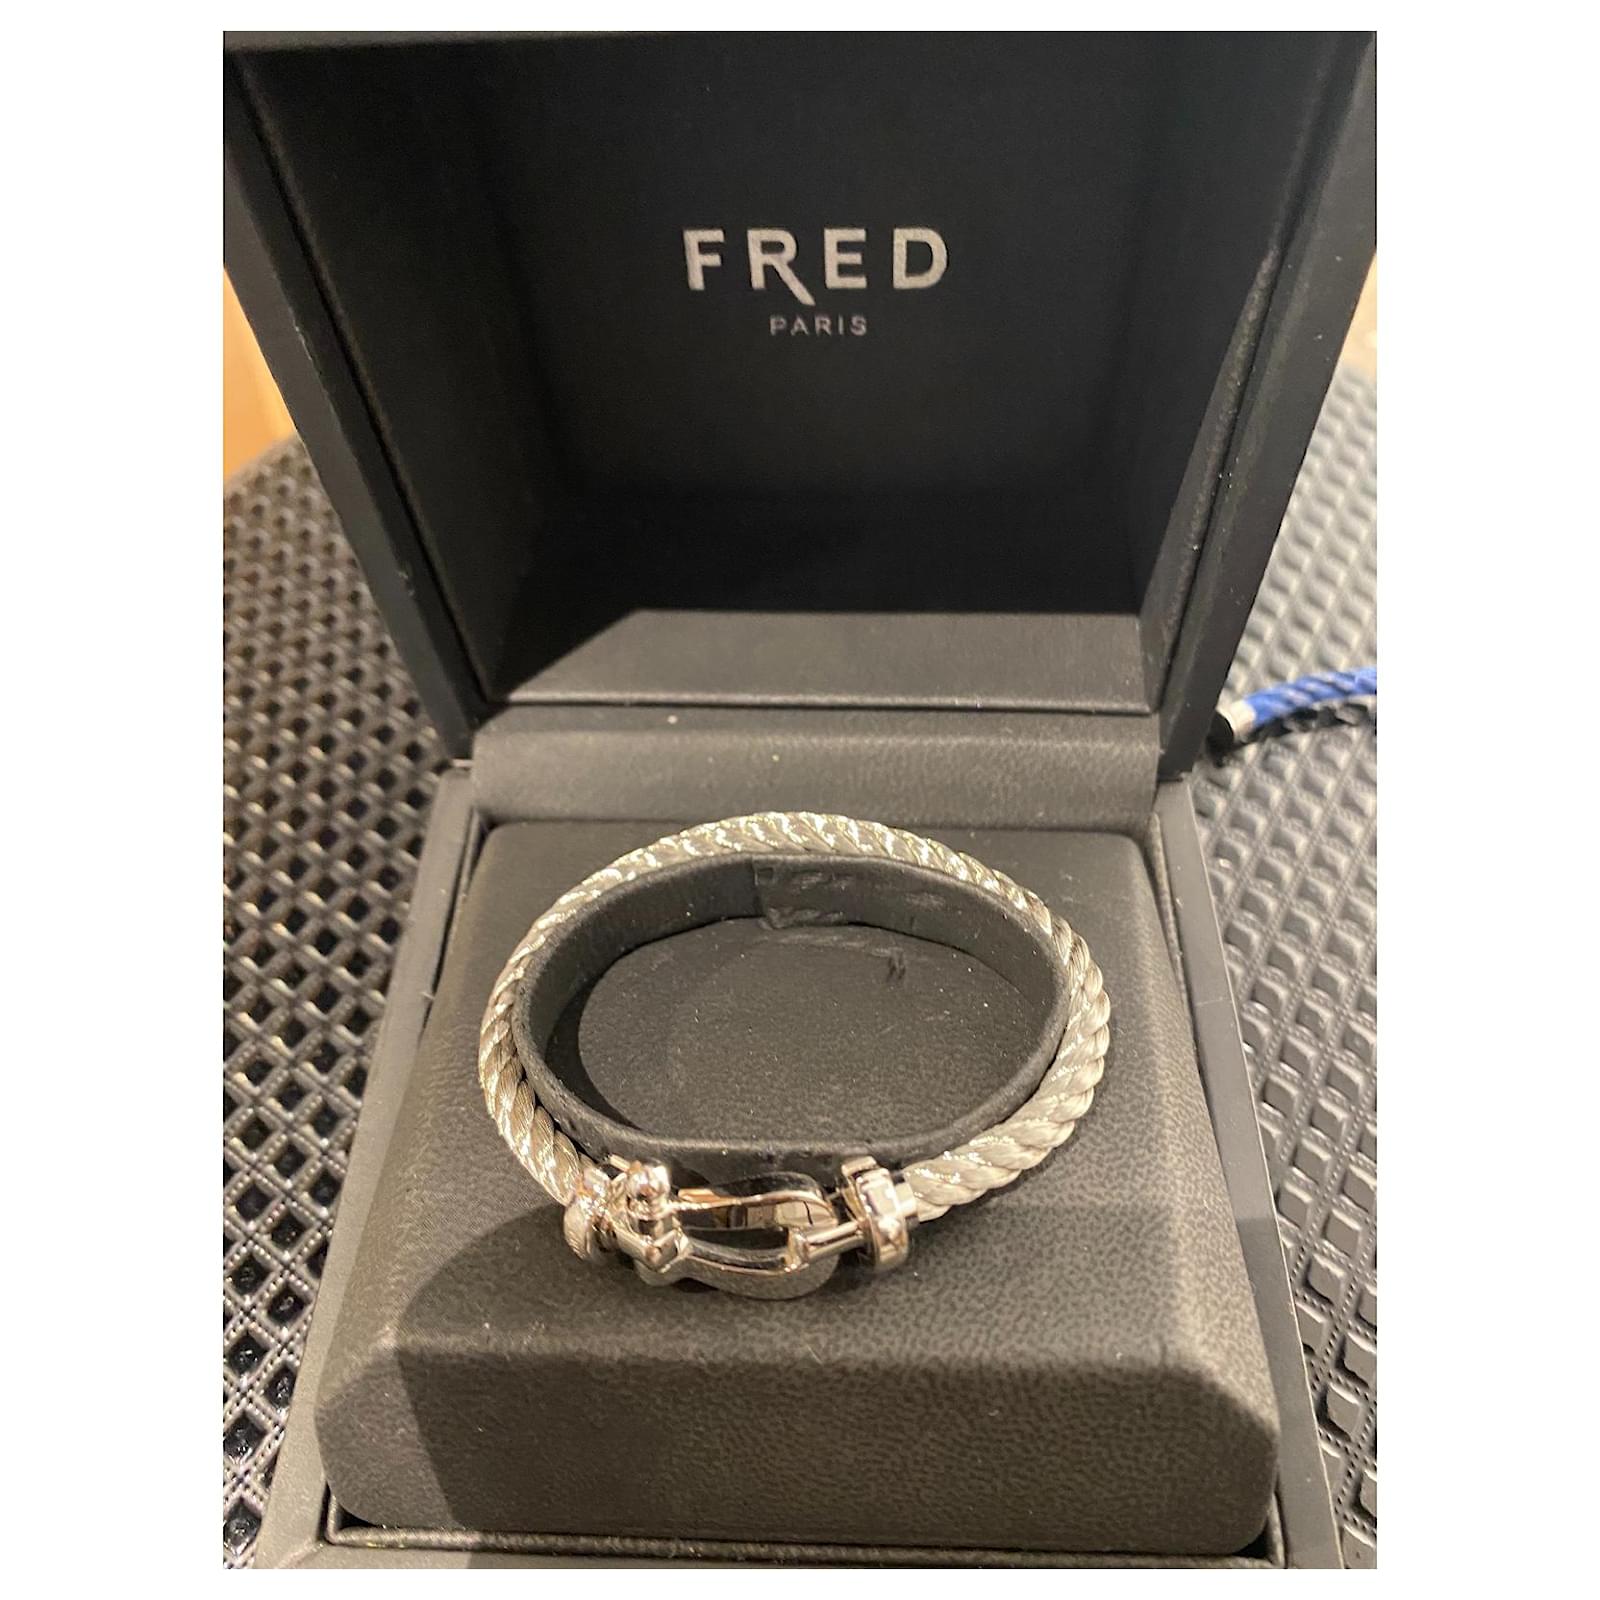 Fred Paris Force 10 Diamond Bracelet